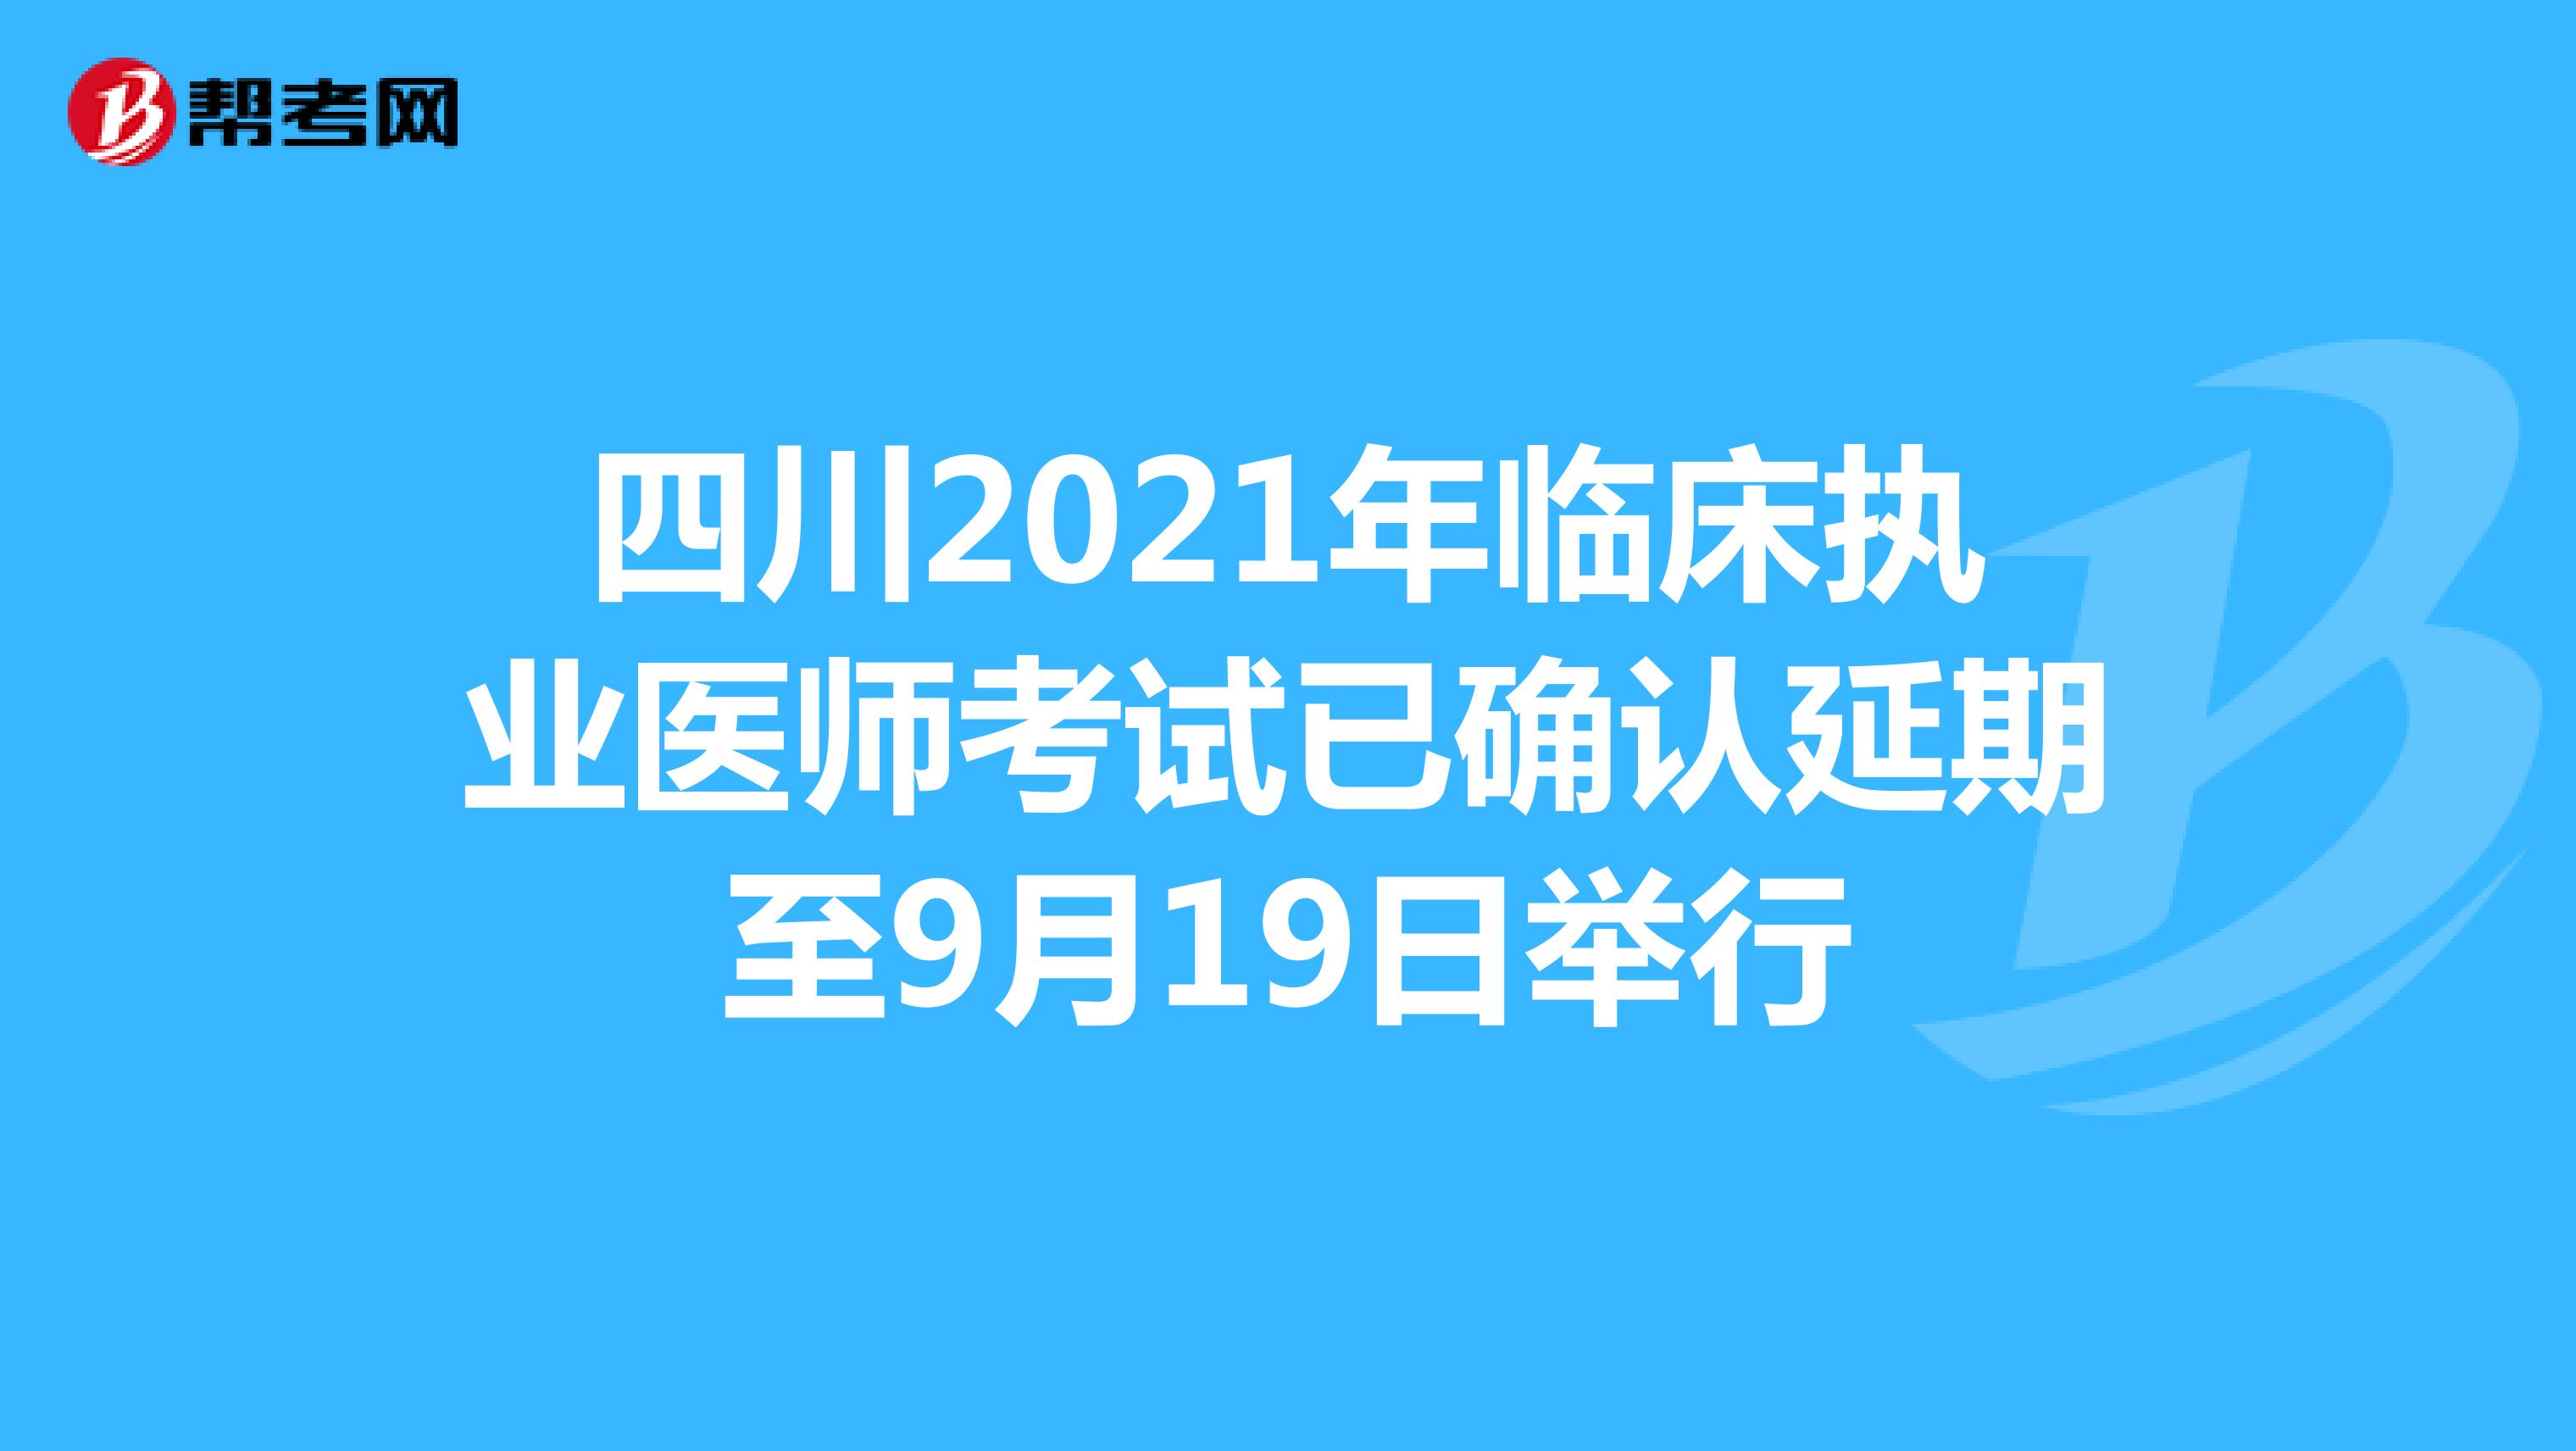 四川2021年临床执业医师考试已确认延期至9月19日举行